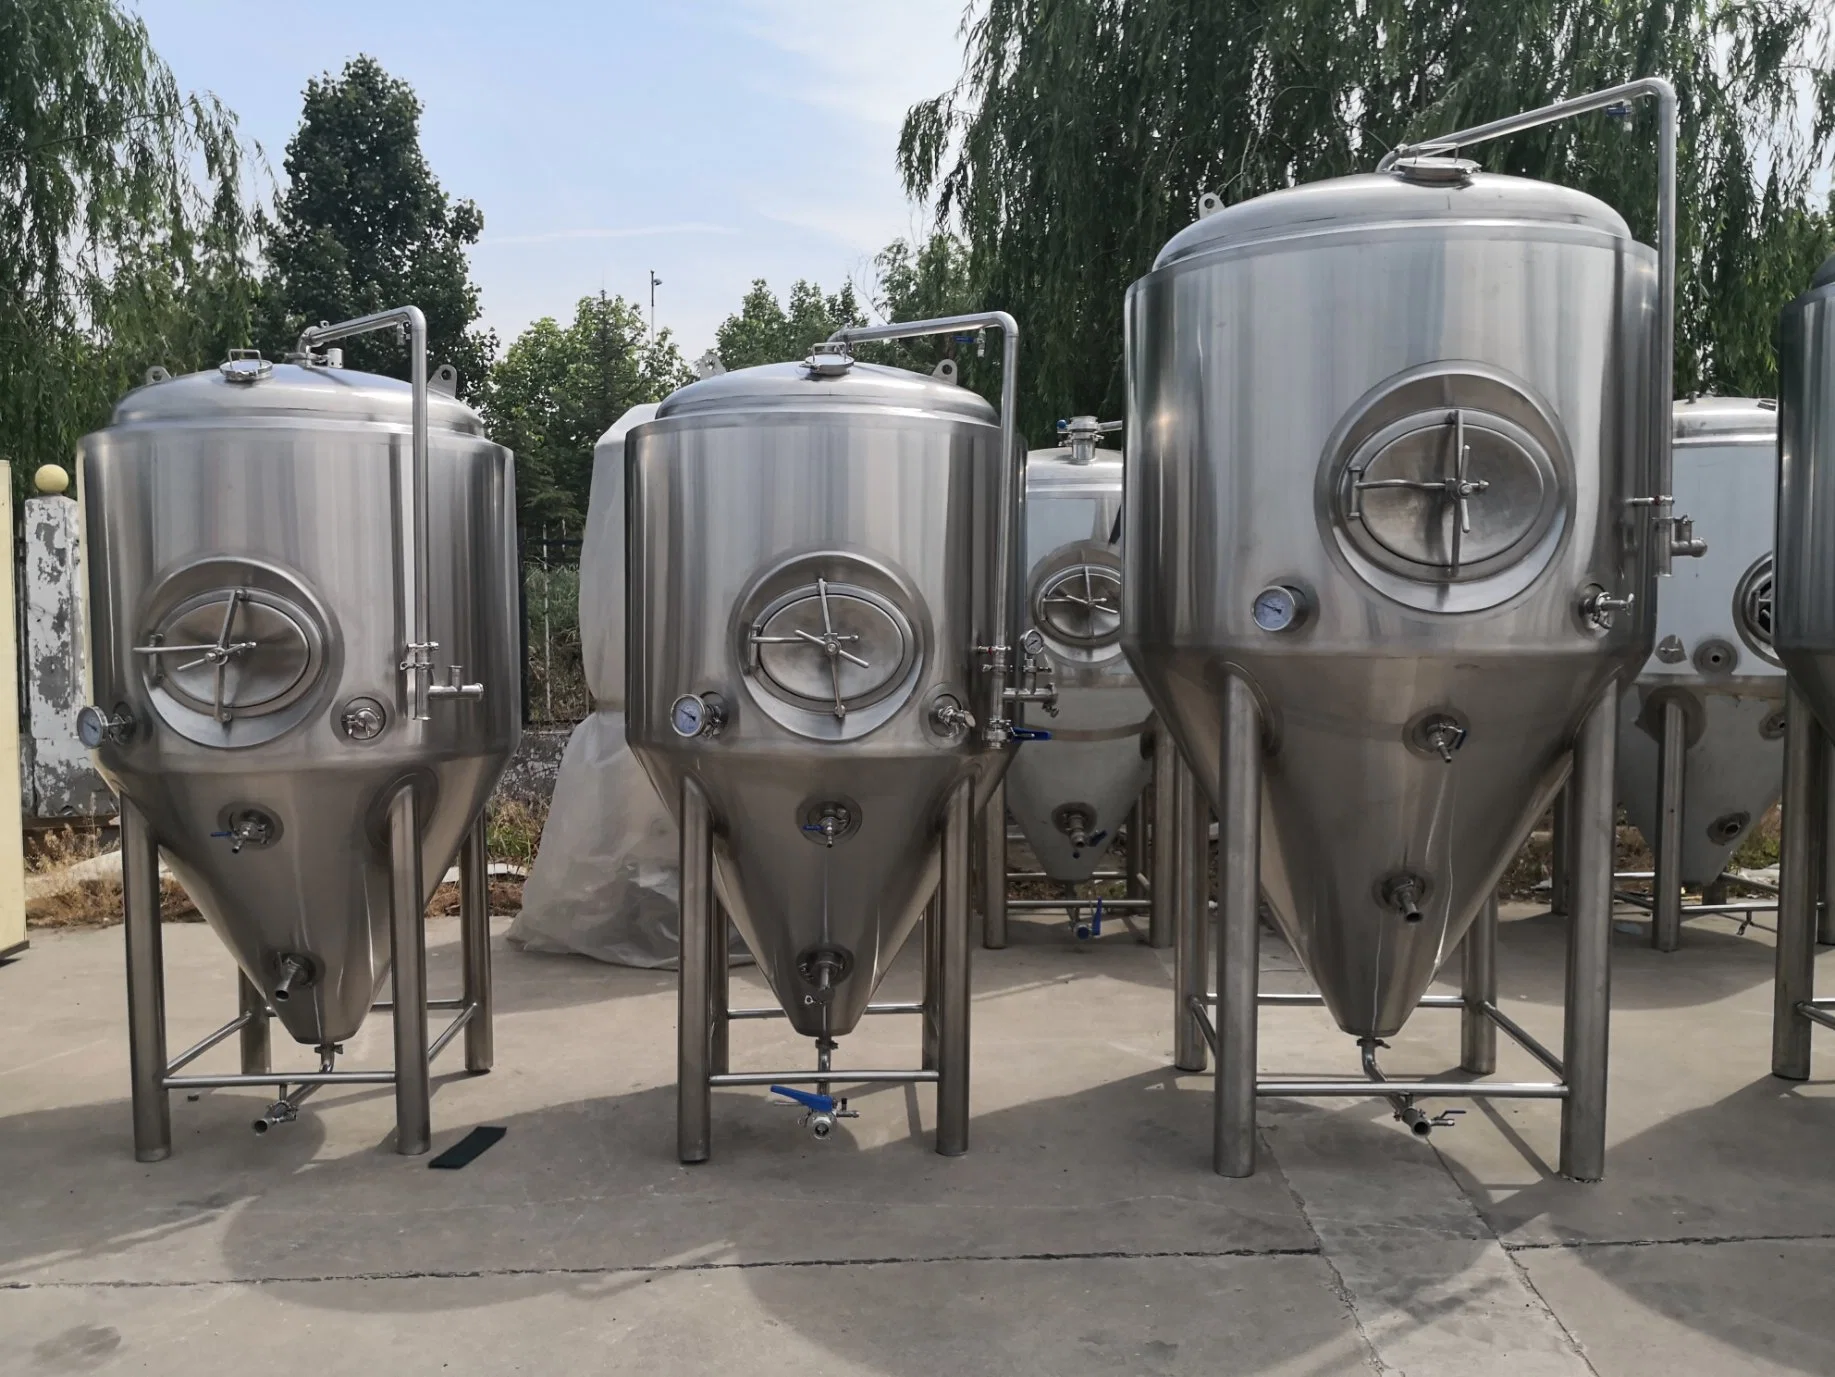 Los buques de la fermentación de la cerveza cónica fermentador con camisa de refrigeración